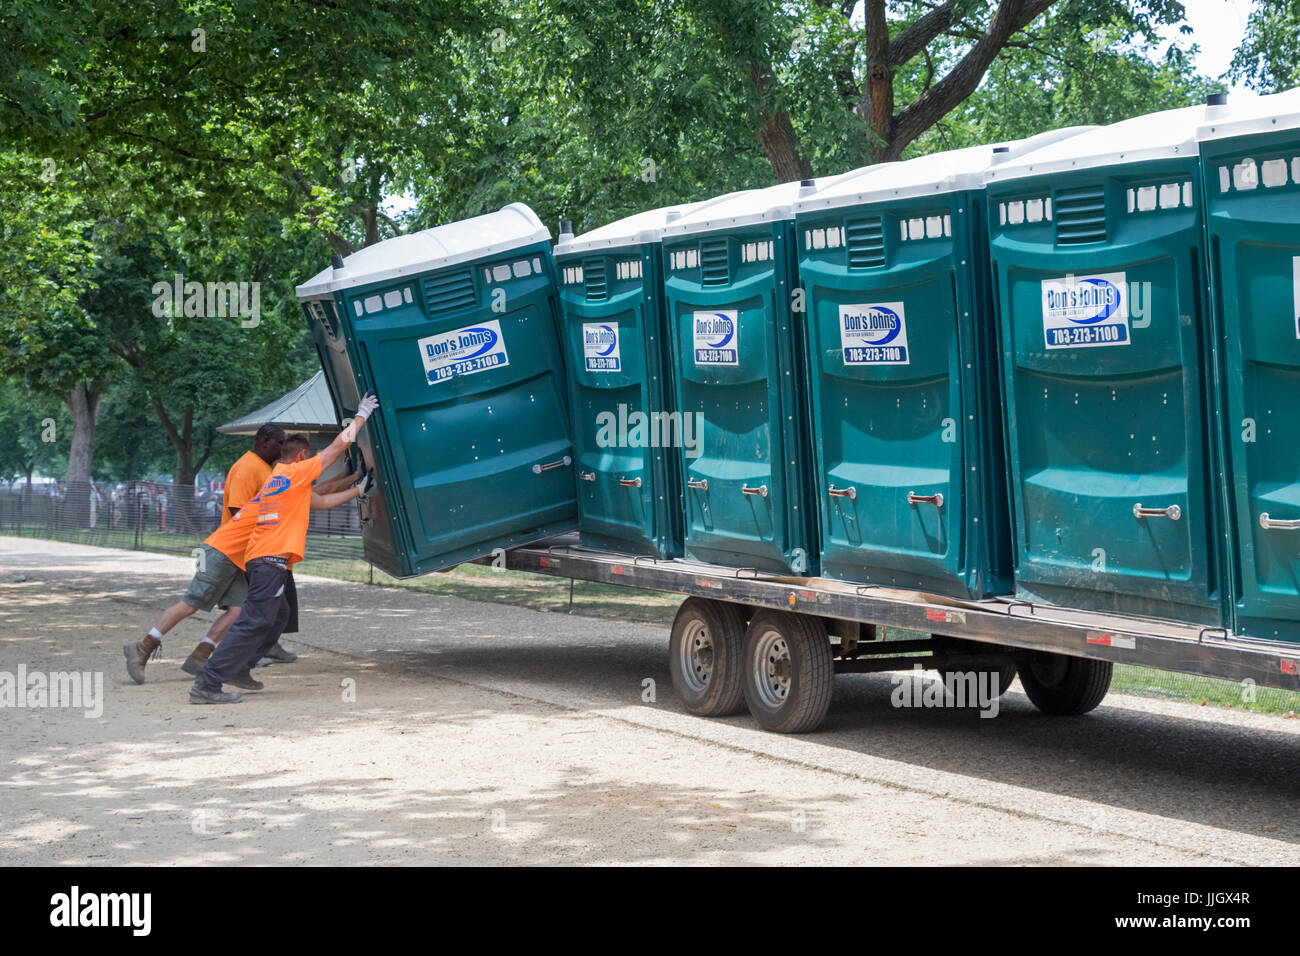 Washington, DC - Arbeiter laden Mobiltoiletten auf einem LKW nach einem Ereignis auf der national Mall. Stockfoto